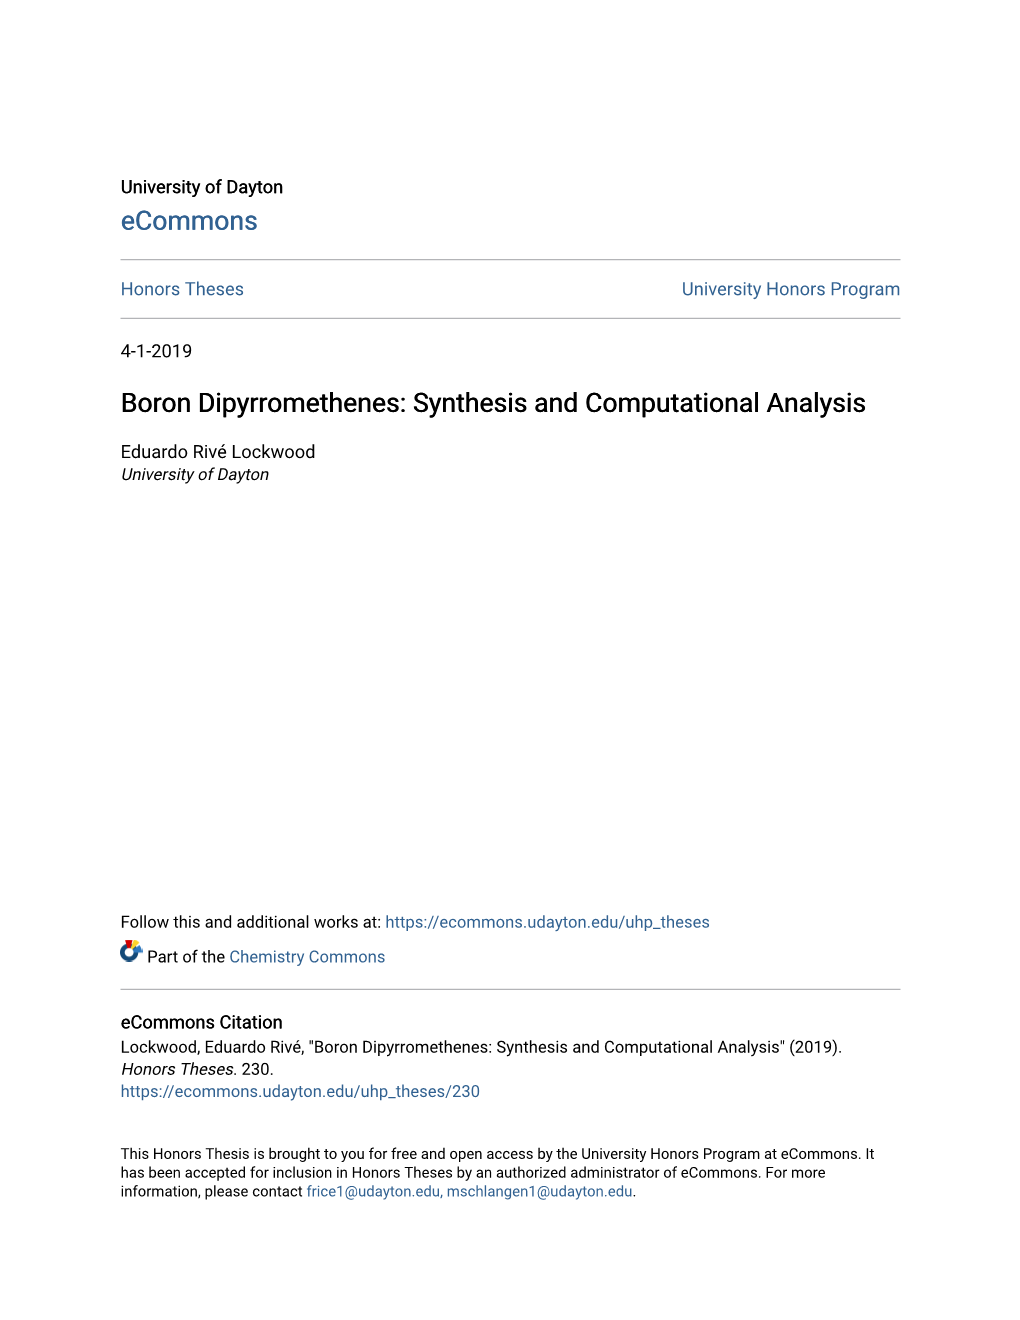 Boron Dipyrromethenes: Synthesis and Computational Analysis